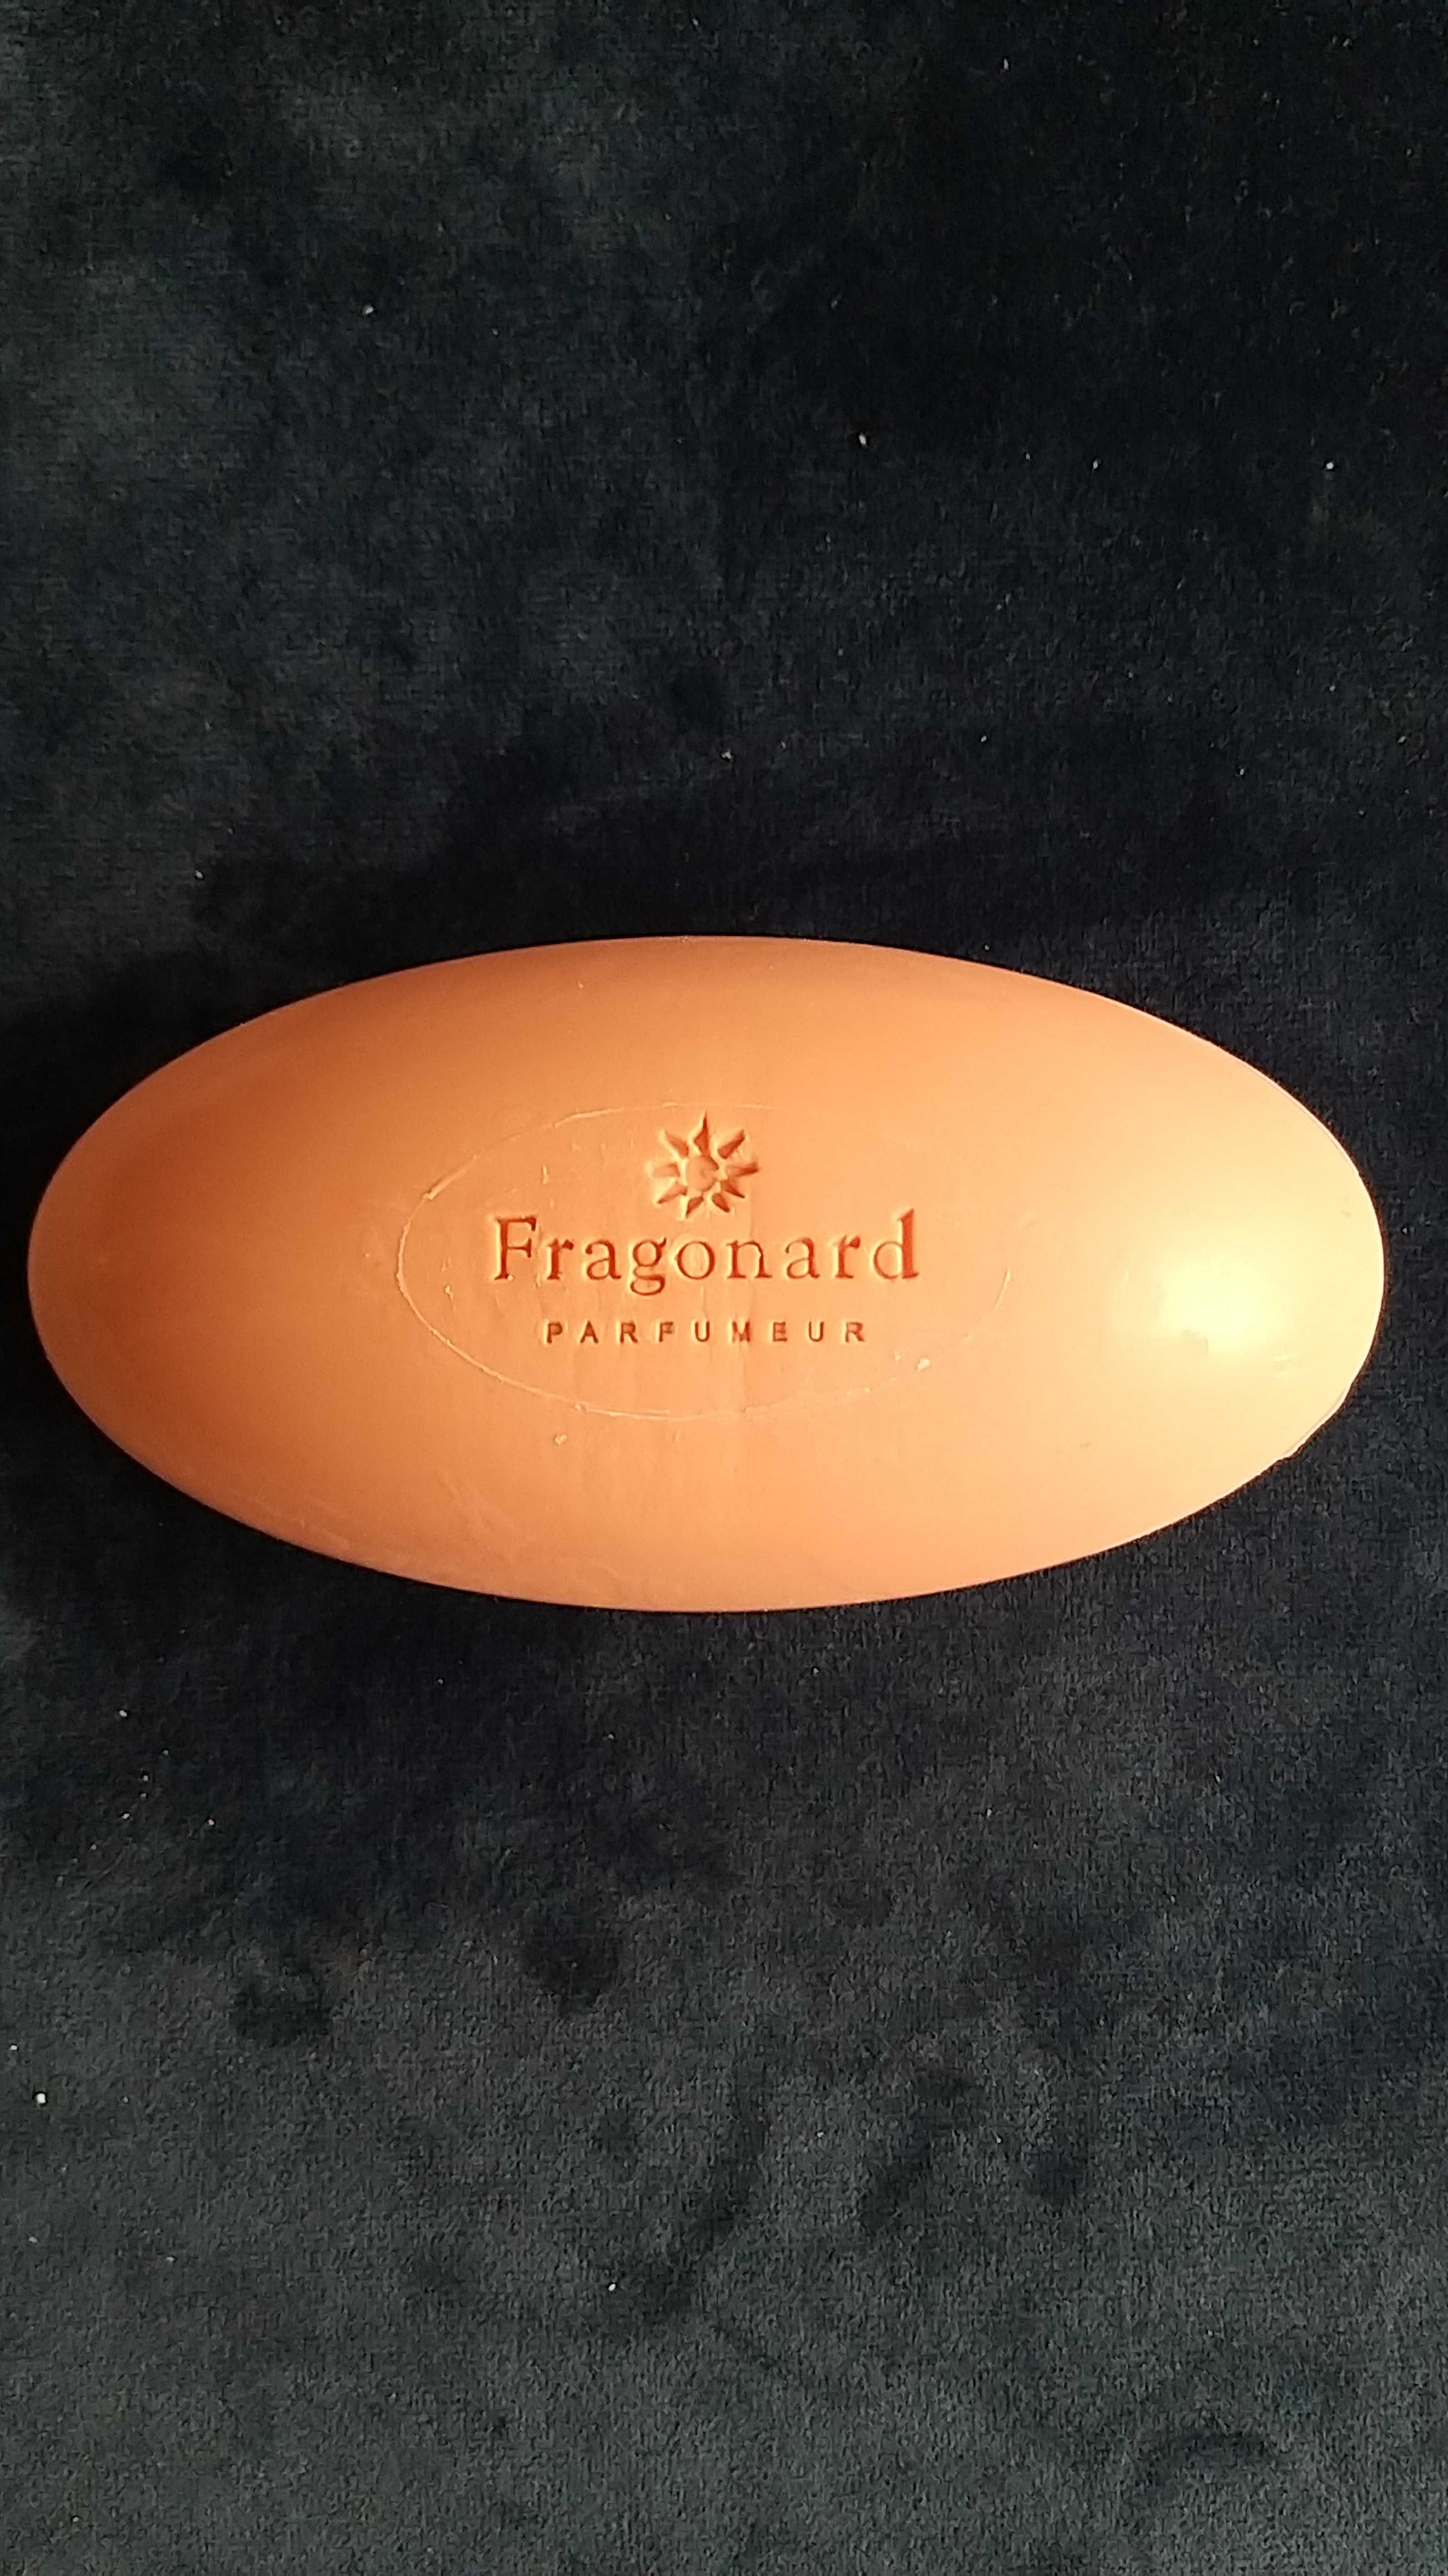 Mydło francuskie fragonard o zapachu kwiatu pomarańczy.